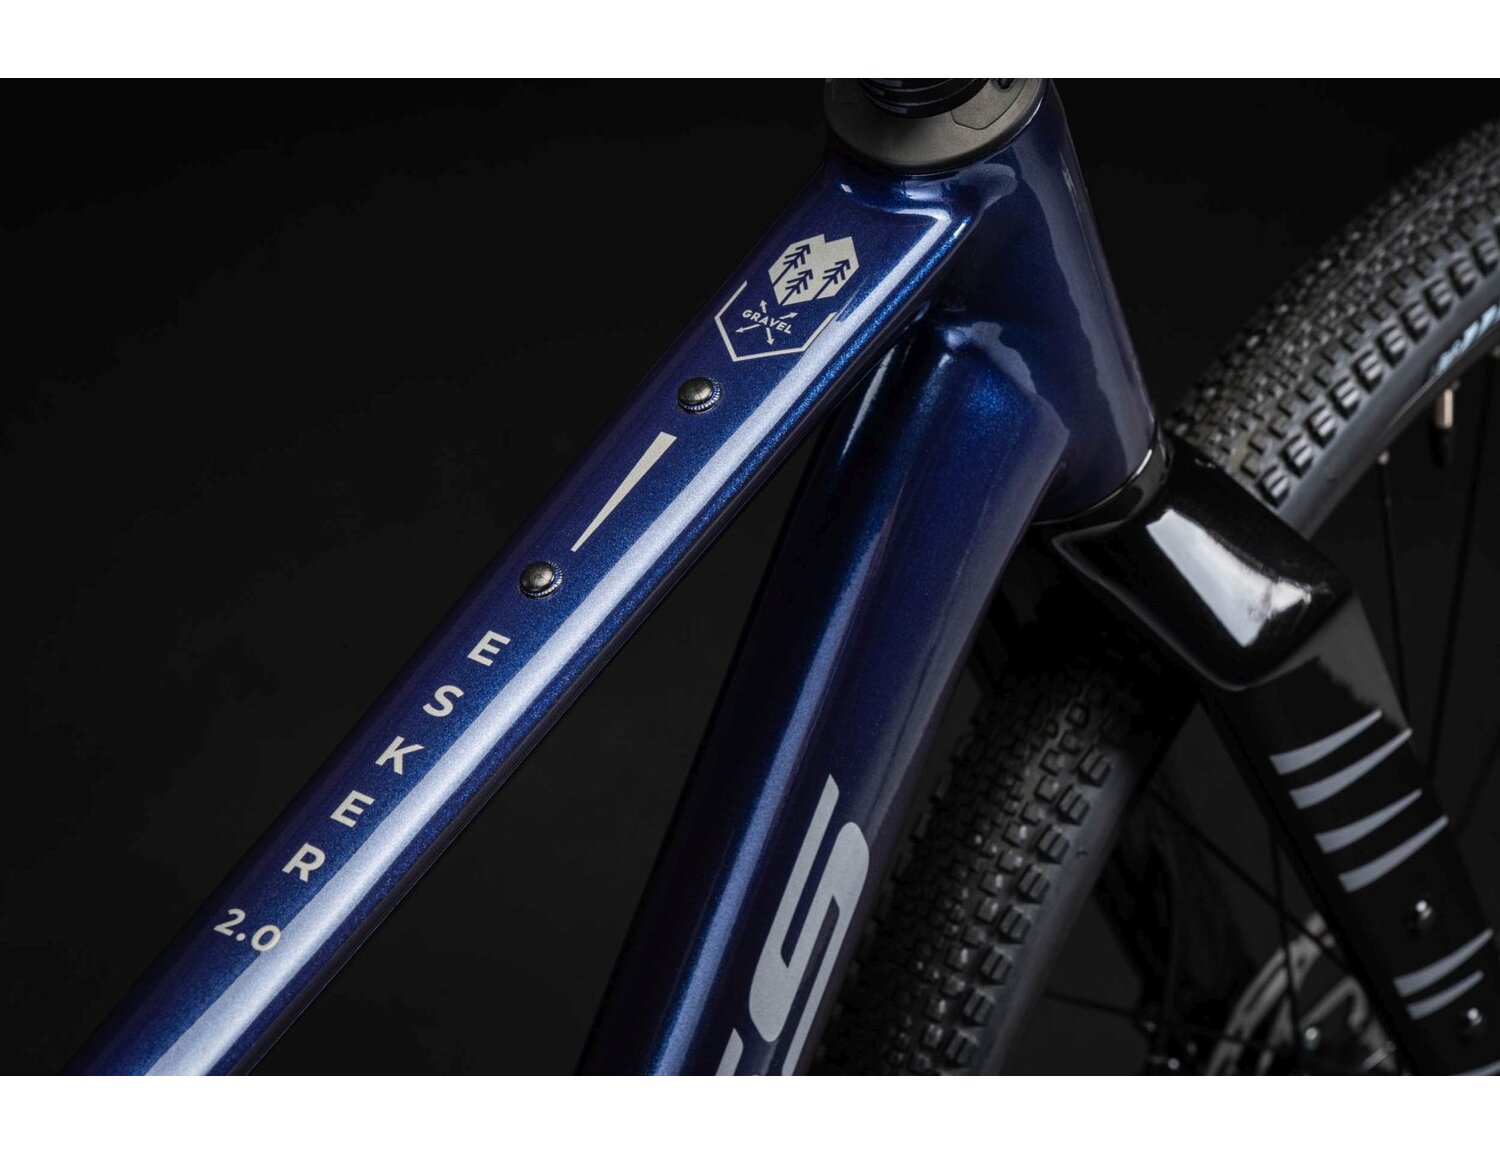  Rama aluminiowa nowej generacji gen2 oraz symbol gravel w rowerze gravelowym Kross Esker 2.0 